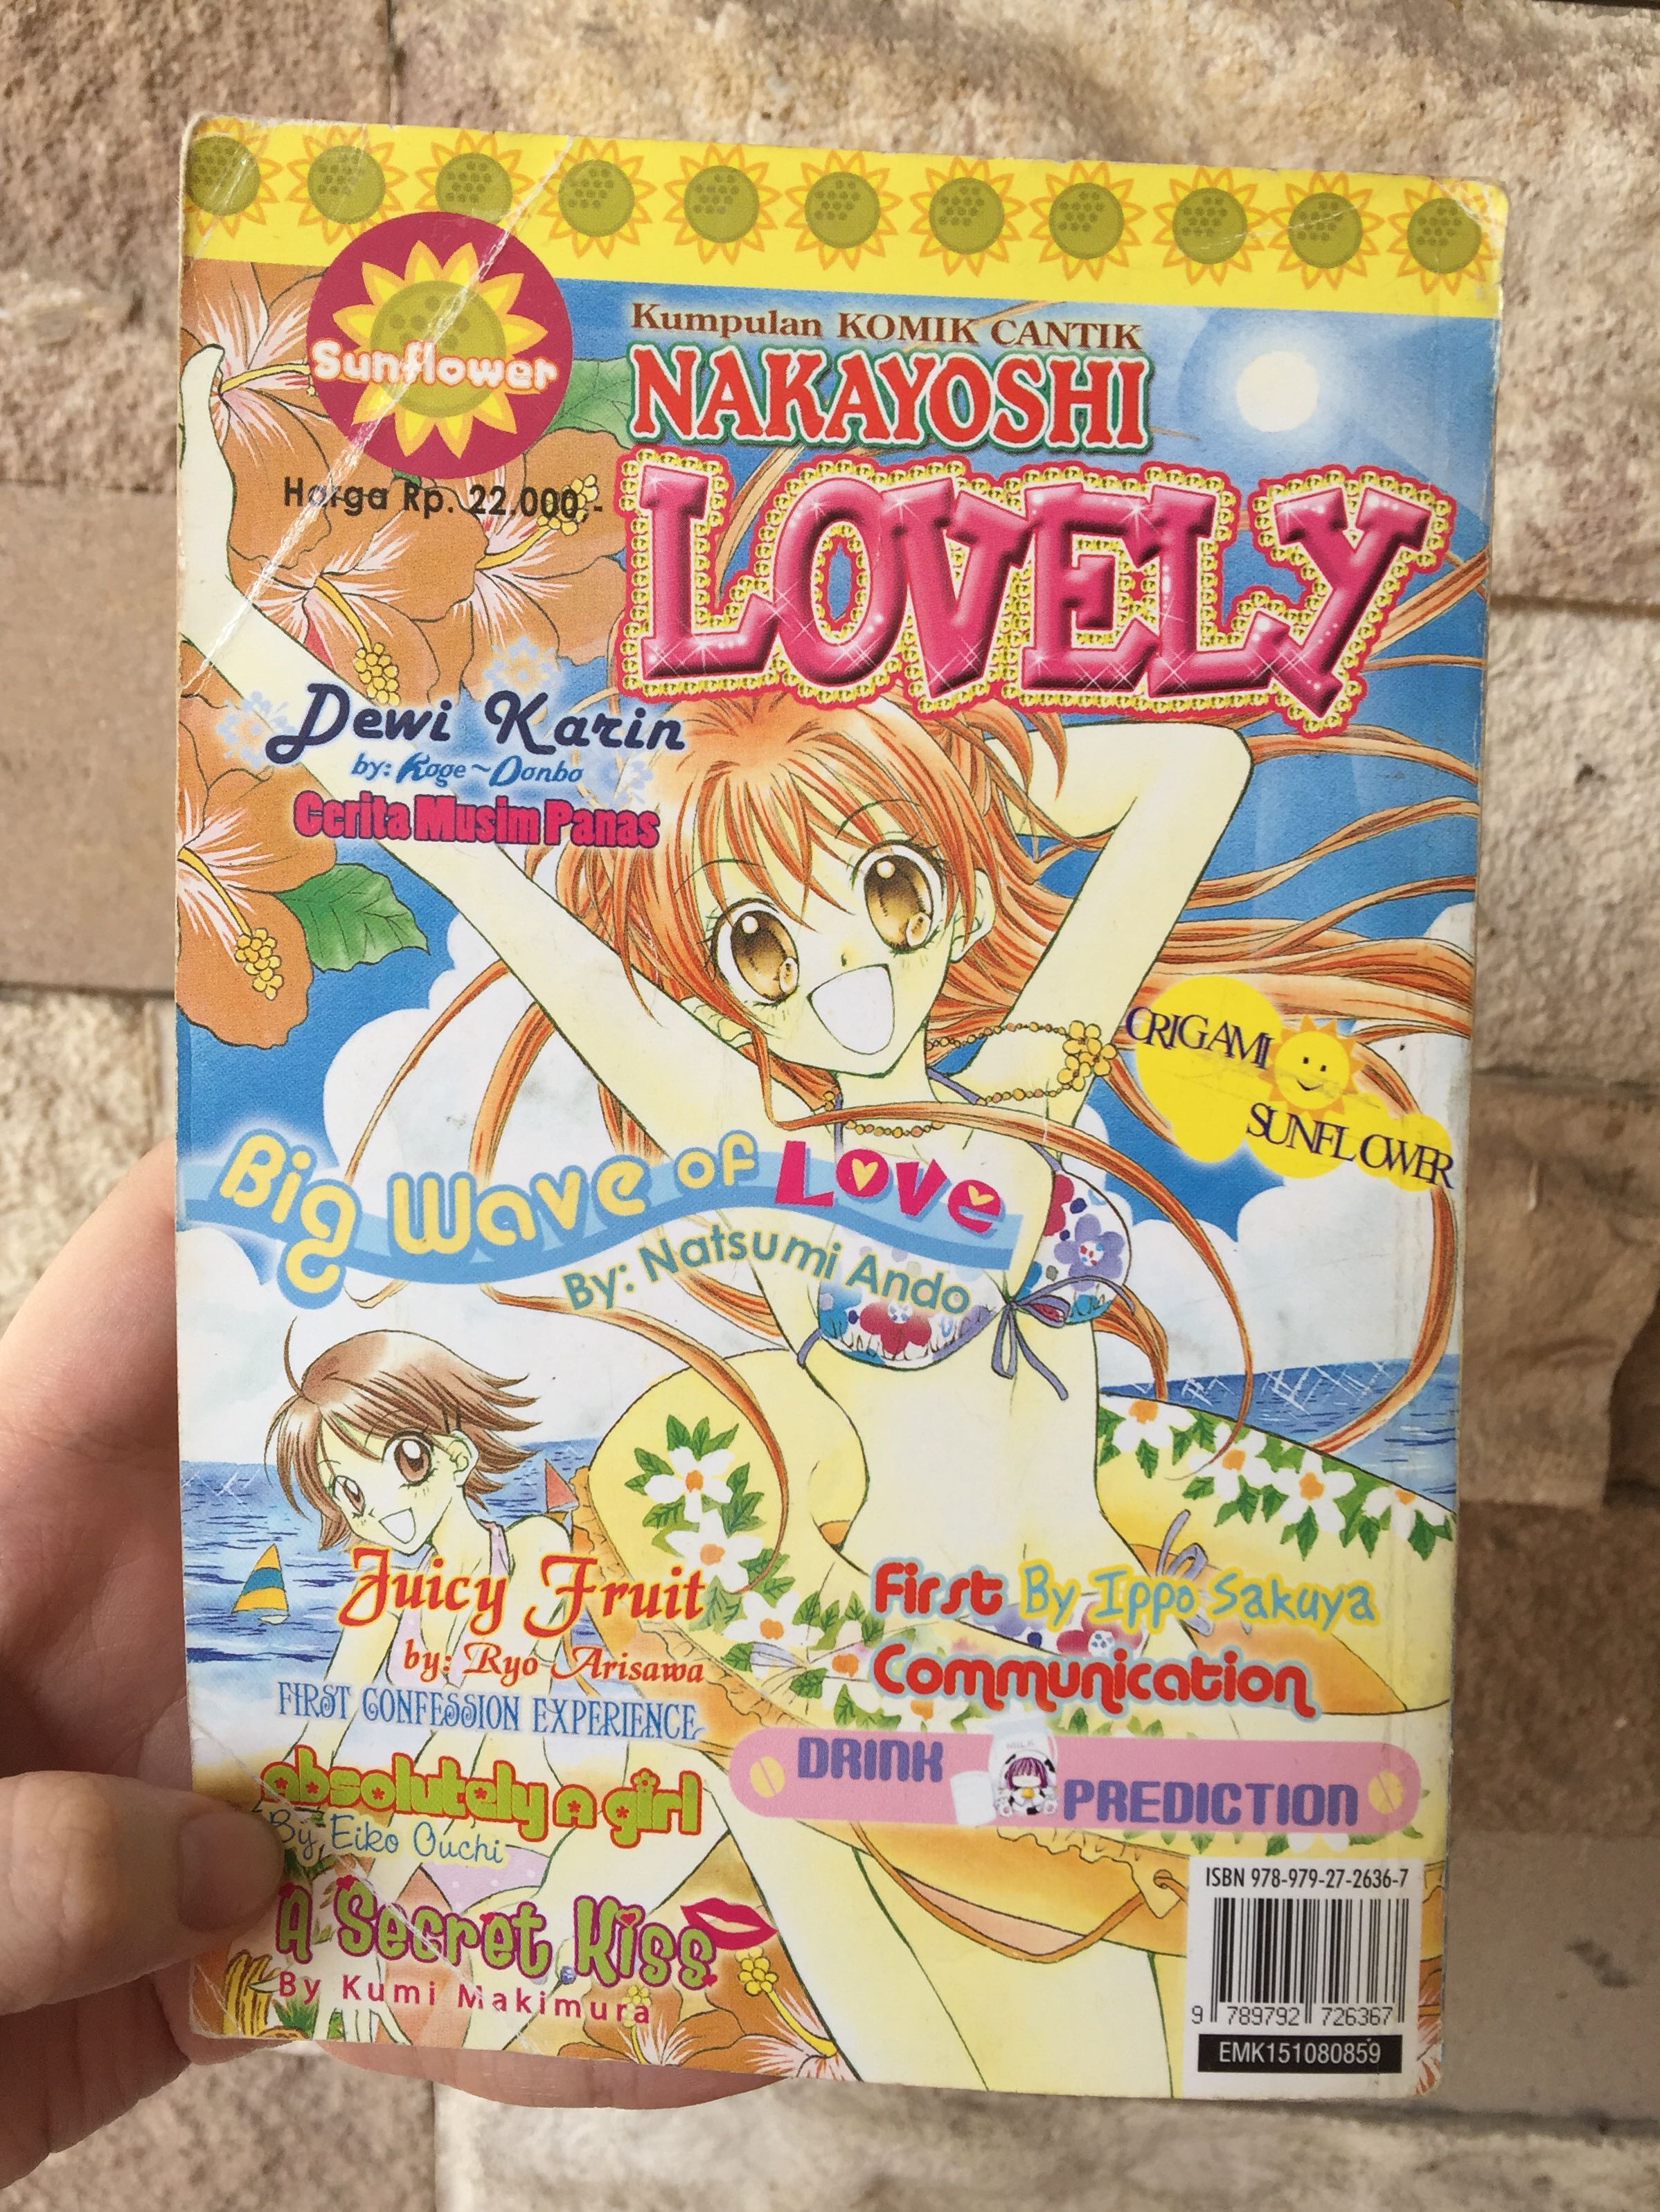 LOVELY NAKAYOSHI BUKU KOMIK JEPANG Books Stationery Comics